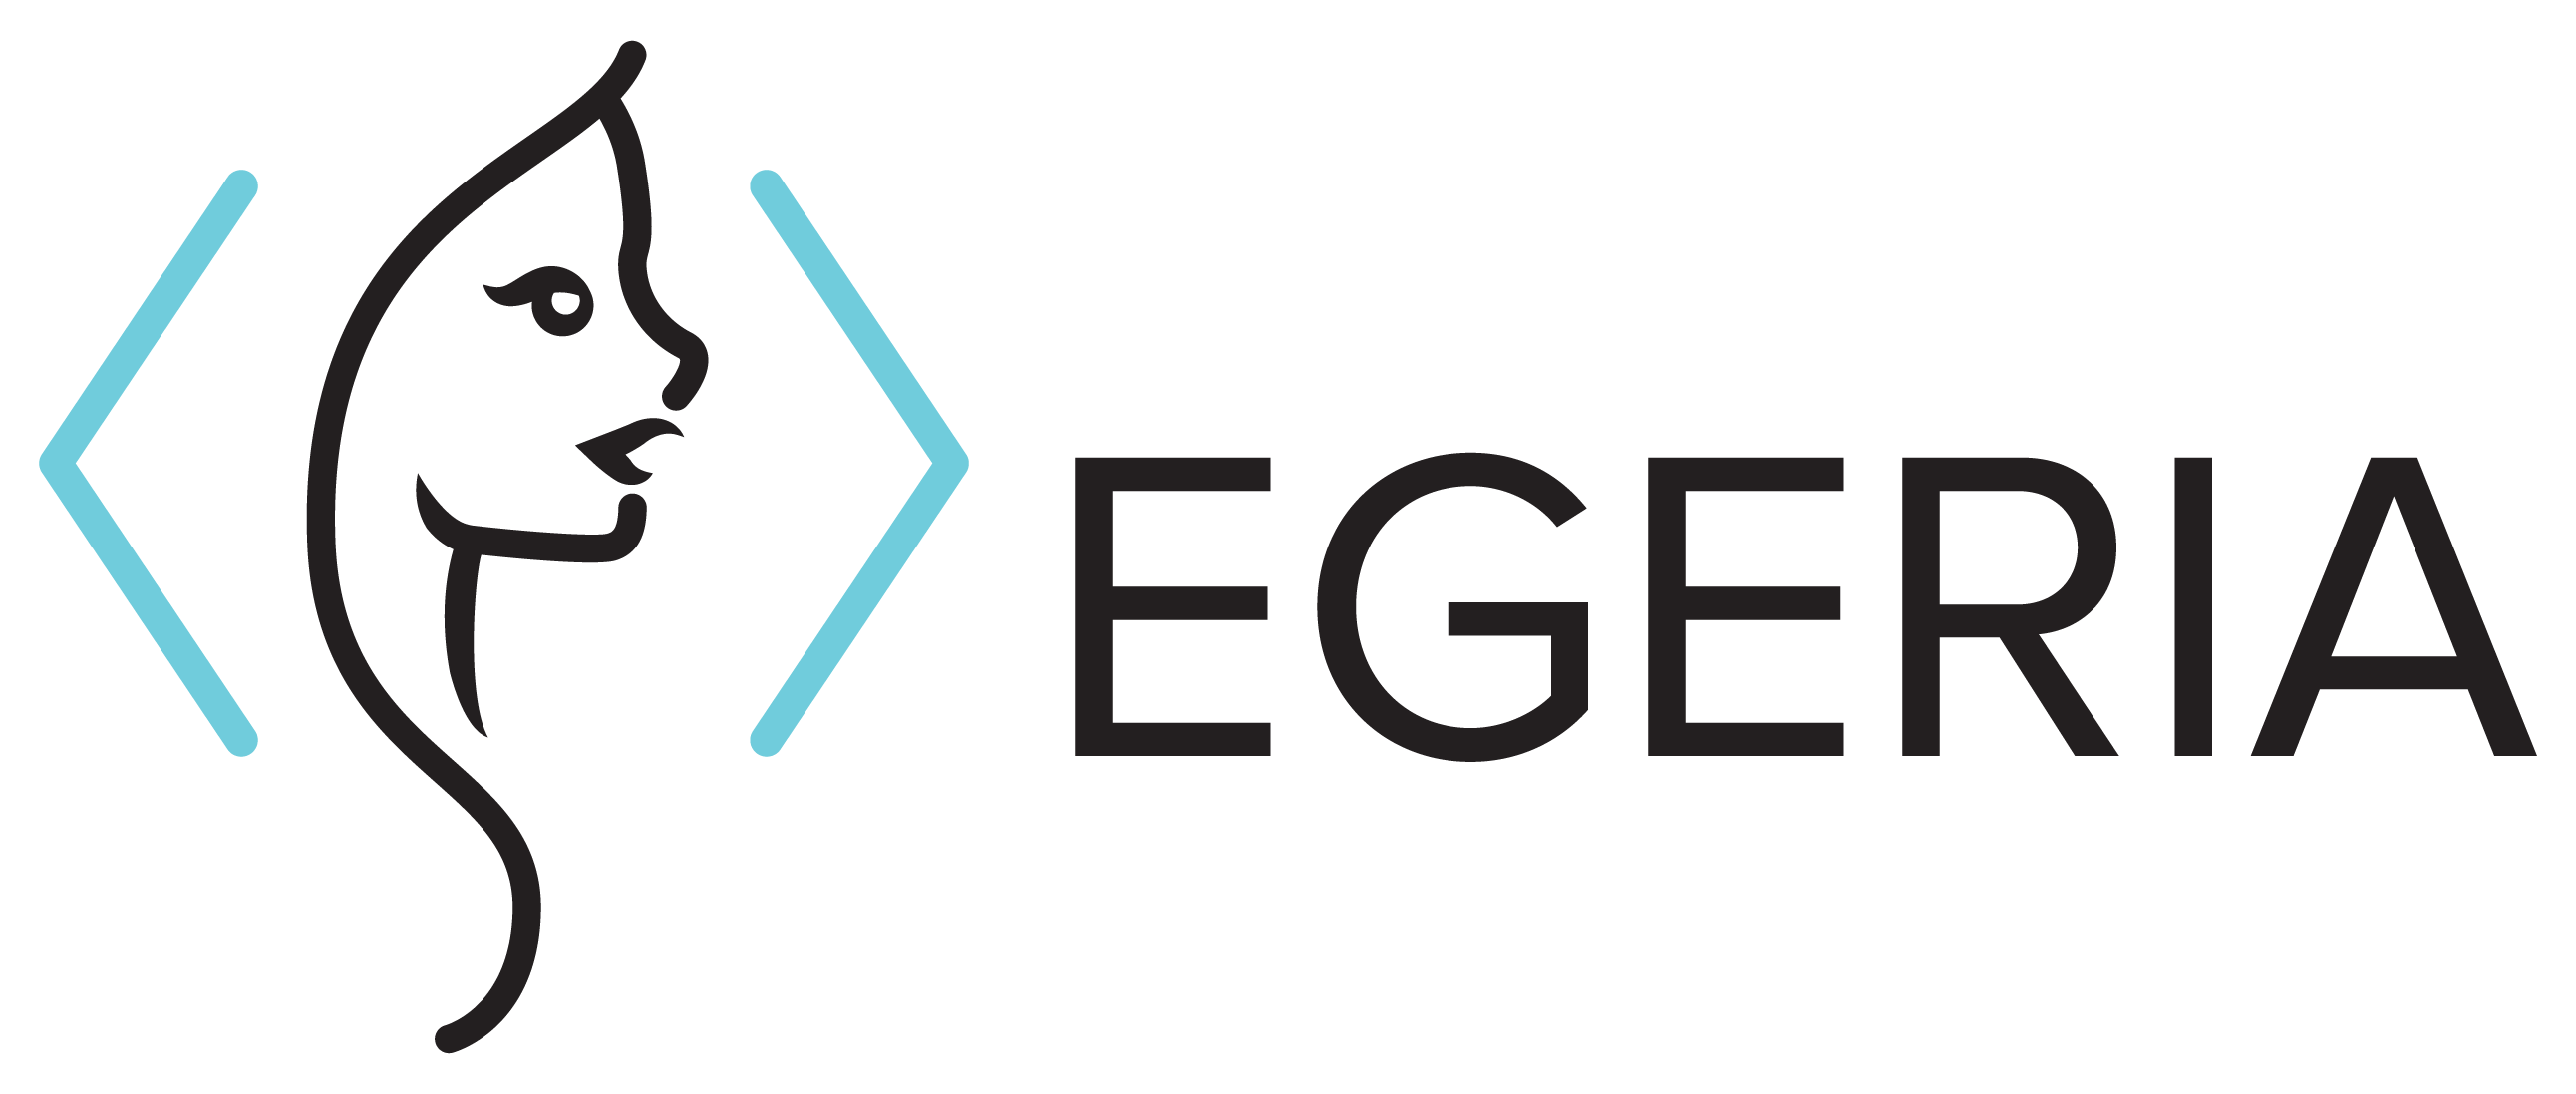 Egeria Logo